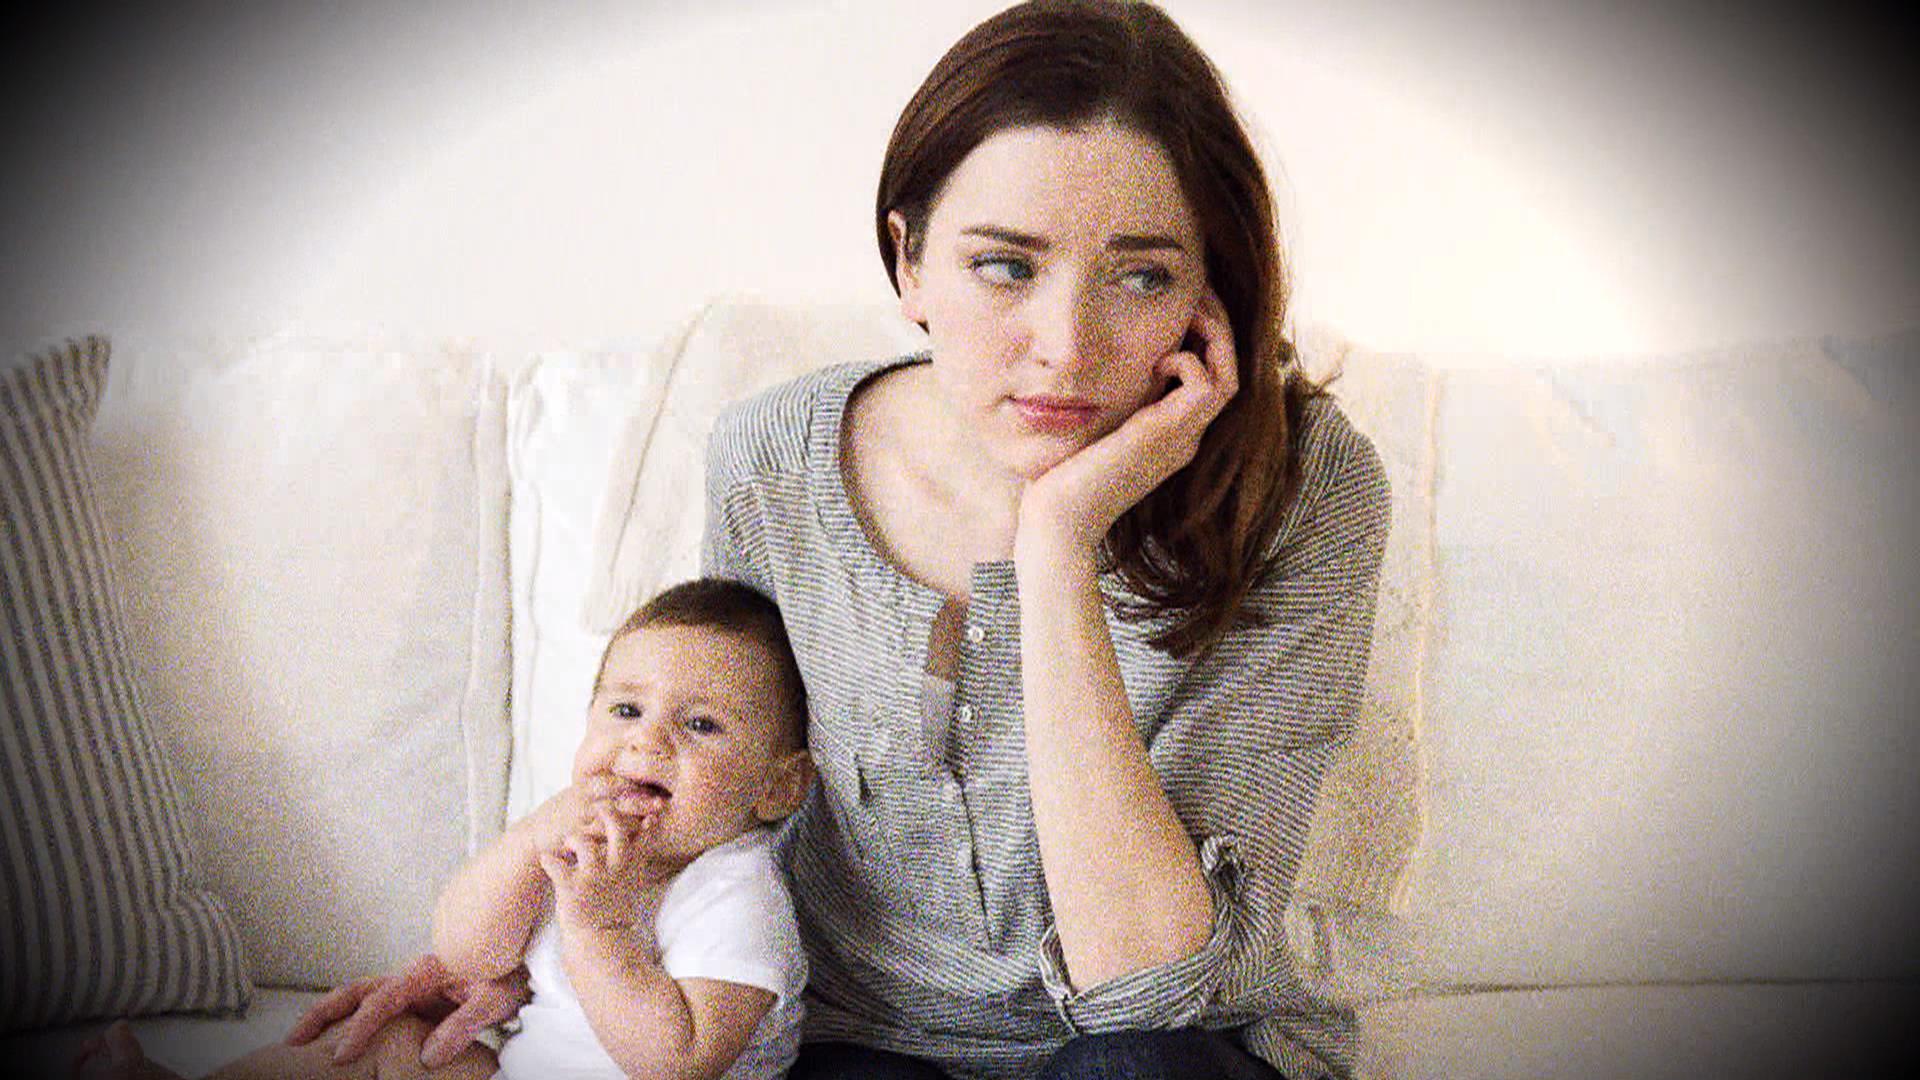 Мама, прости, но ты опасна! 7 признаков токсичной матери, которая отравляет жизнь | lisa.ru